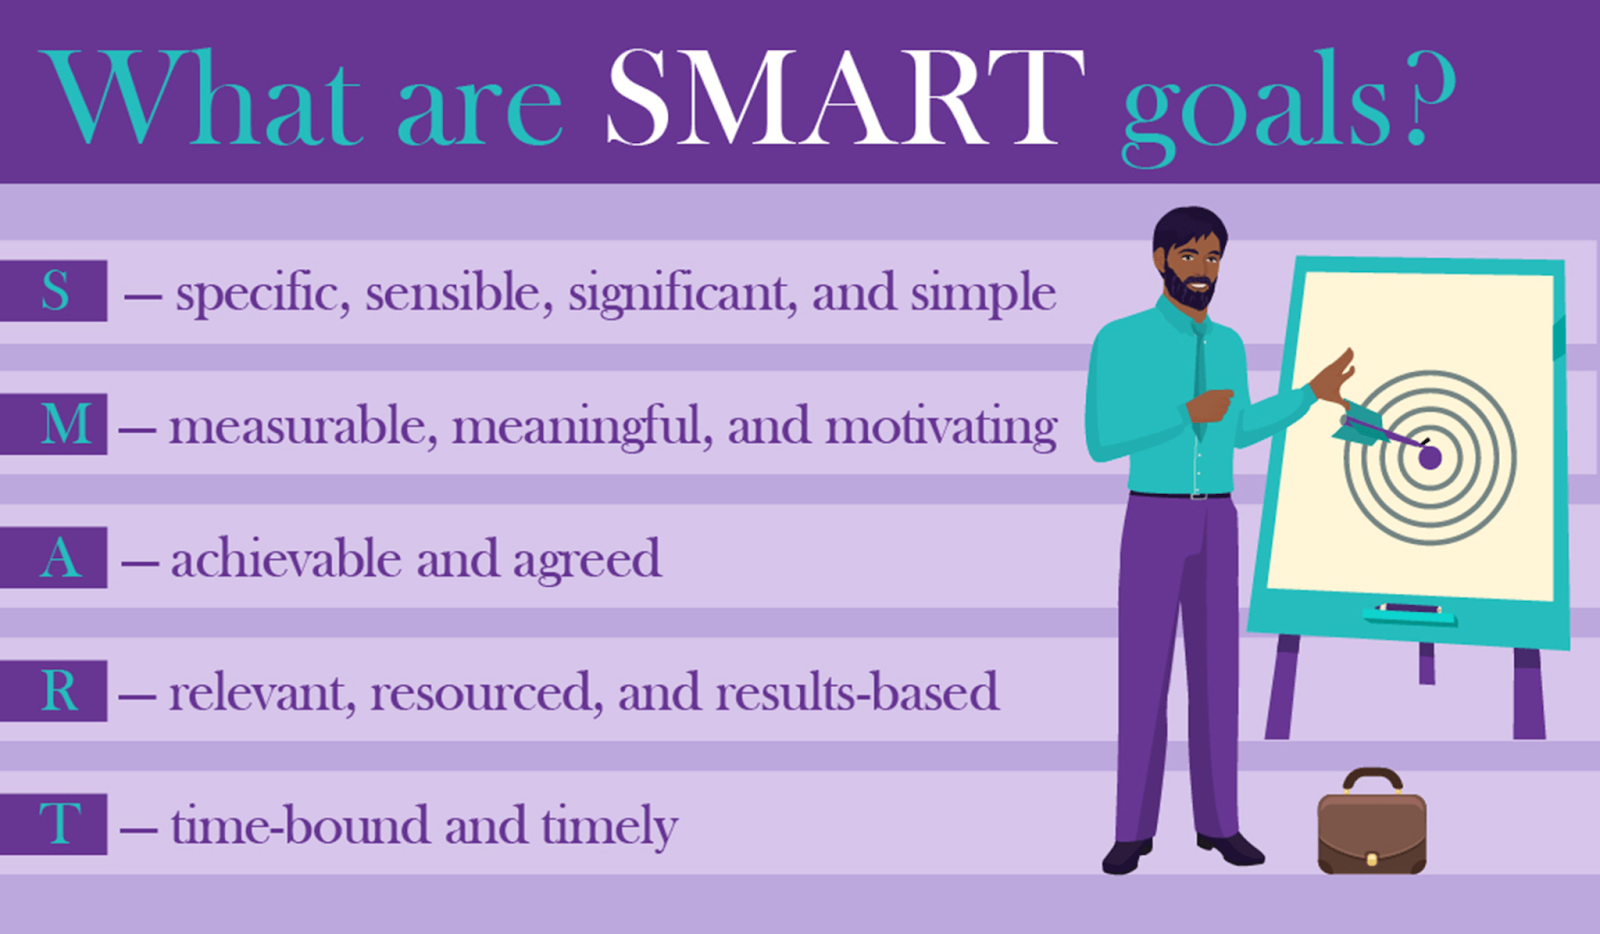 A chart defining SMART goals